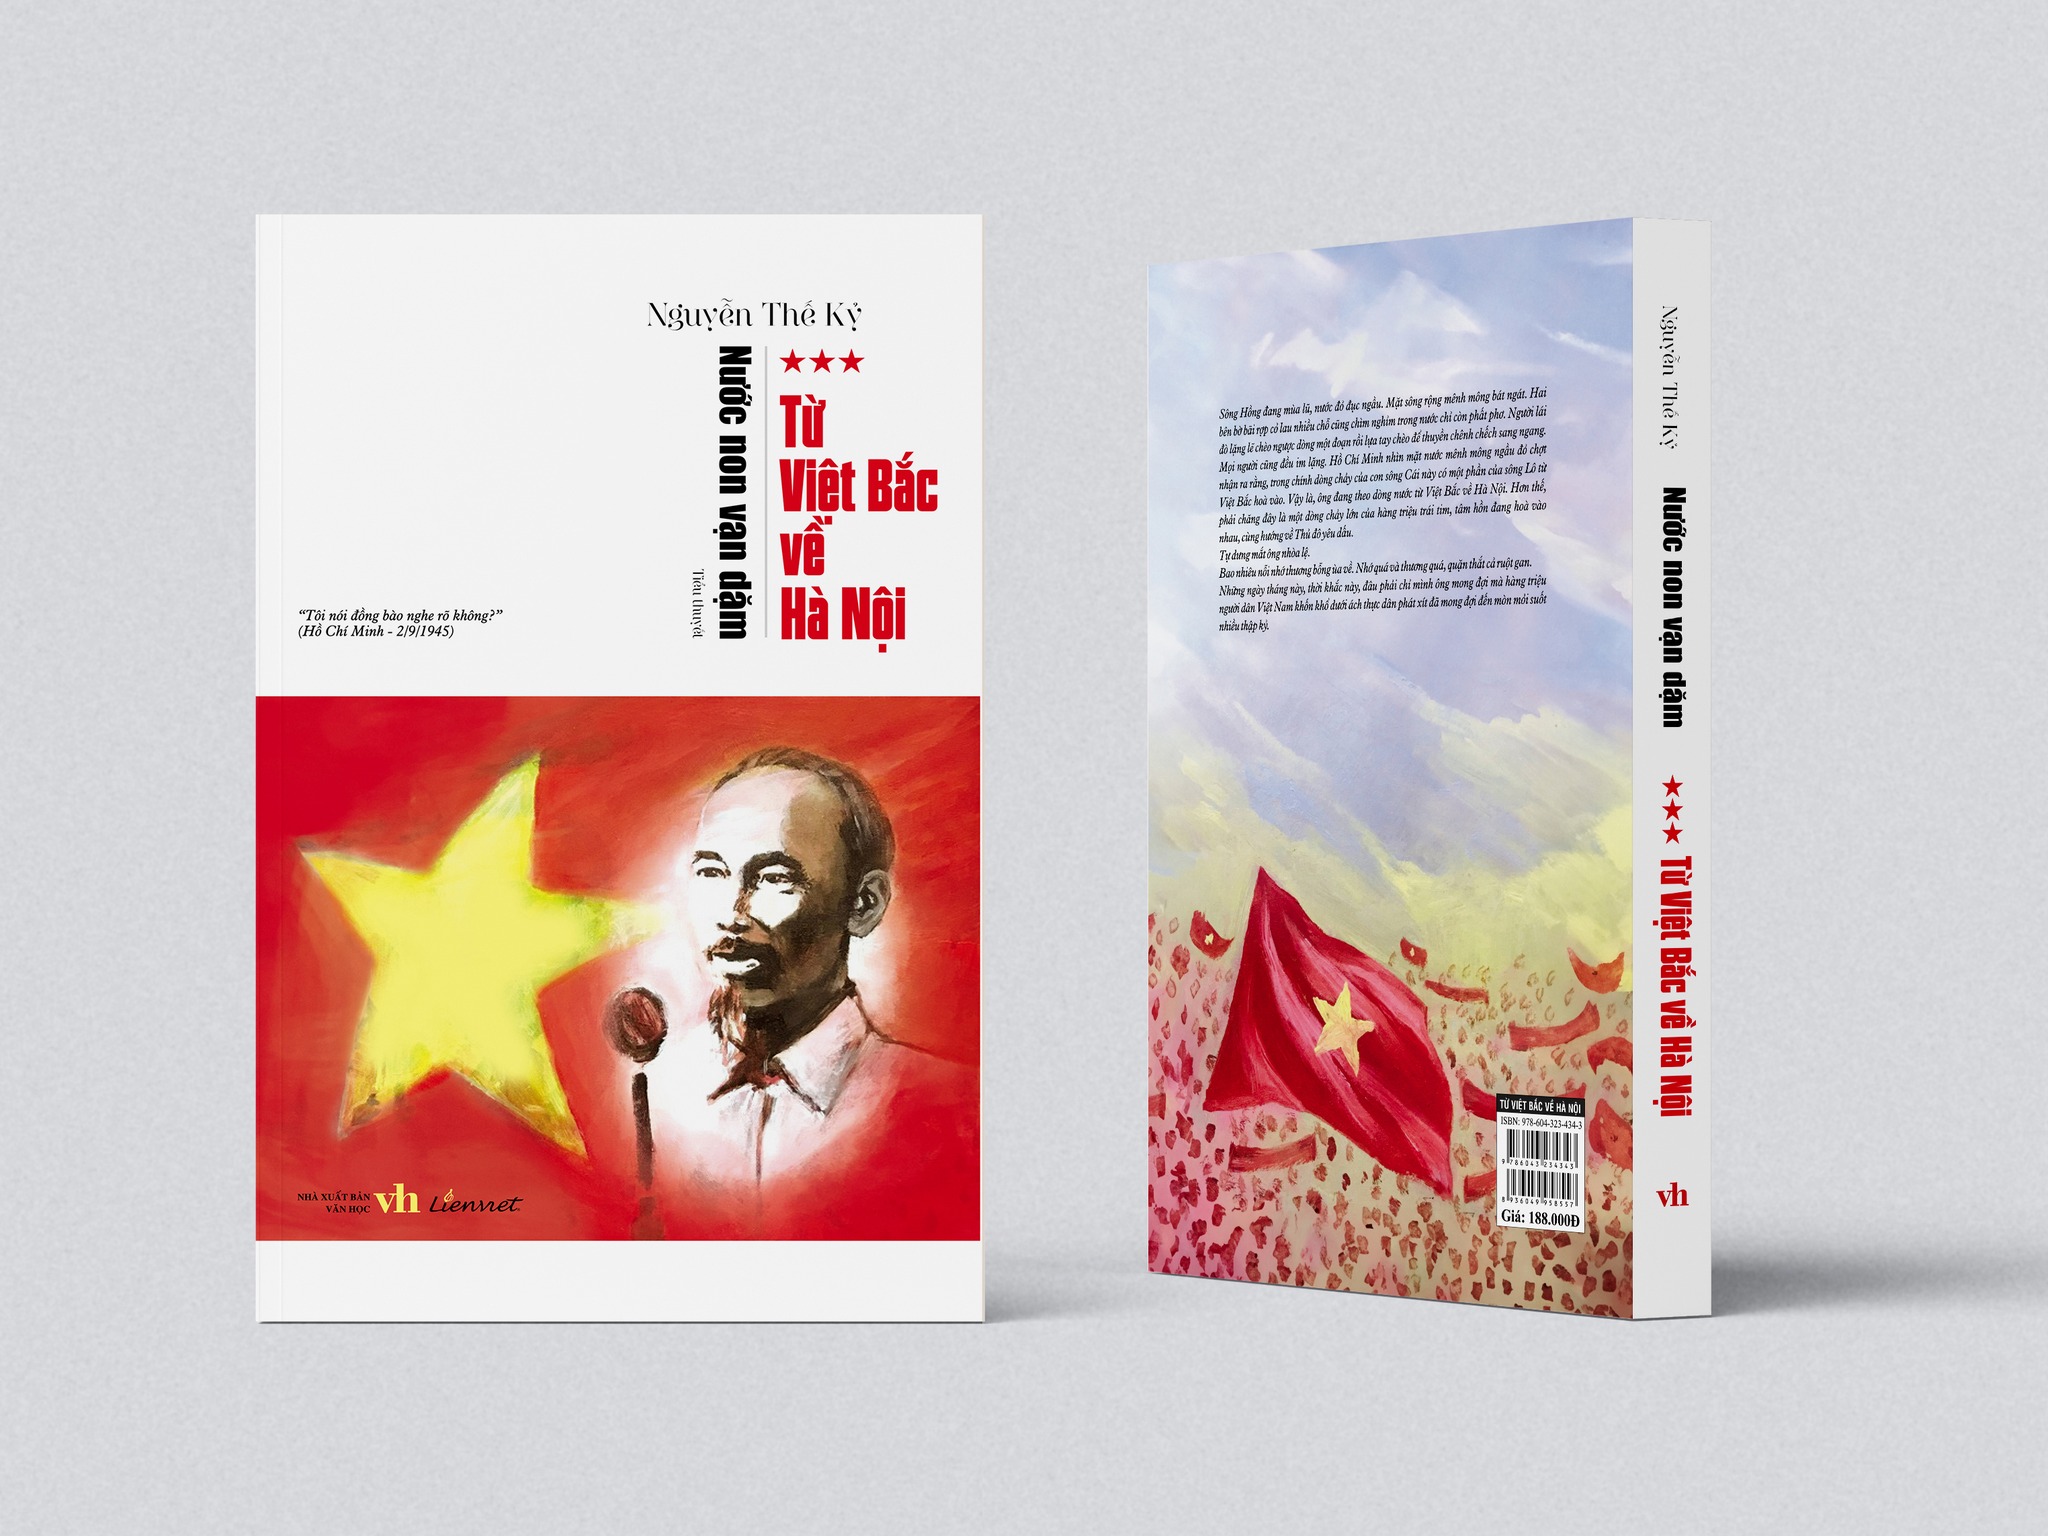 Ra mắt sách “Từ Việt Bắc về Hà Nội” của nhà văn Nguyễn Thế Kỷ - 2